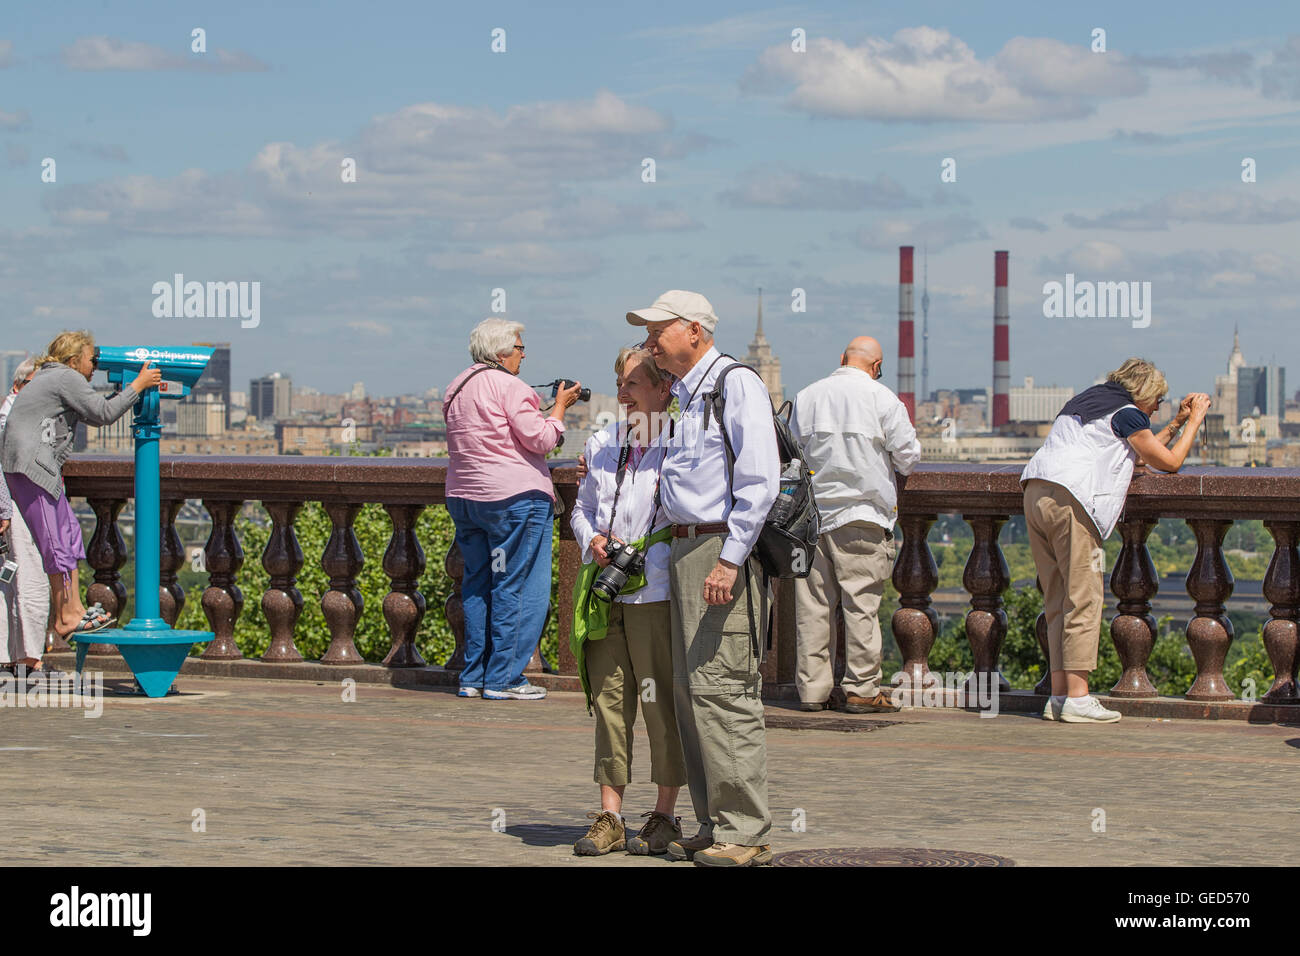 Les touristes sur une plate-forme d'observation sur le mont des Moineaux, Moscou, Russie. Banque D'Images